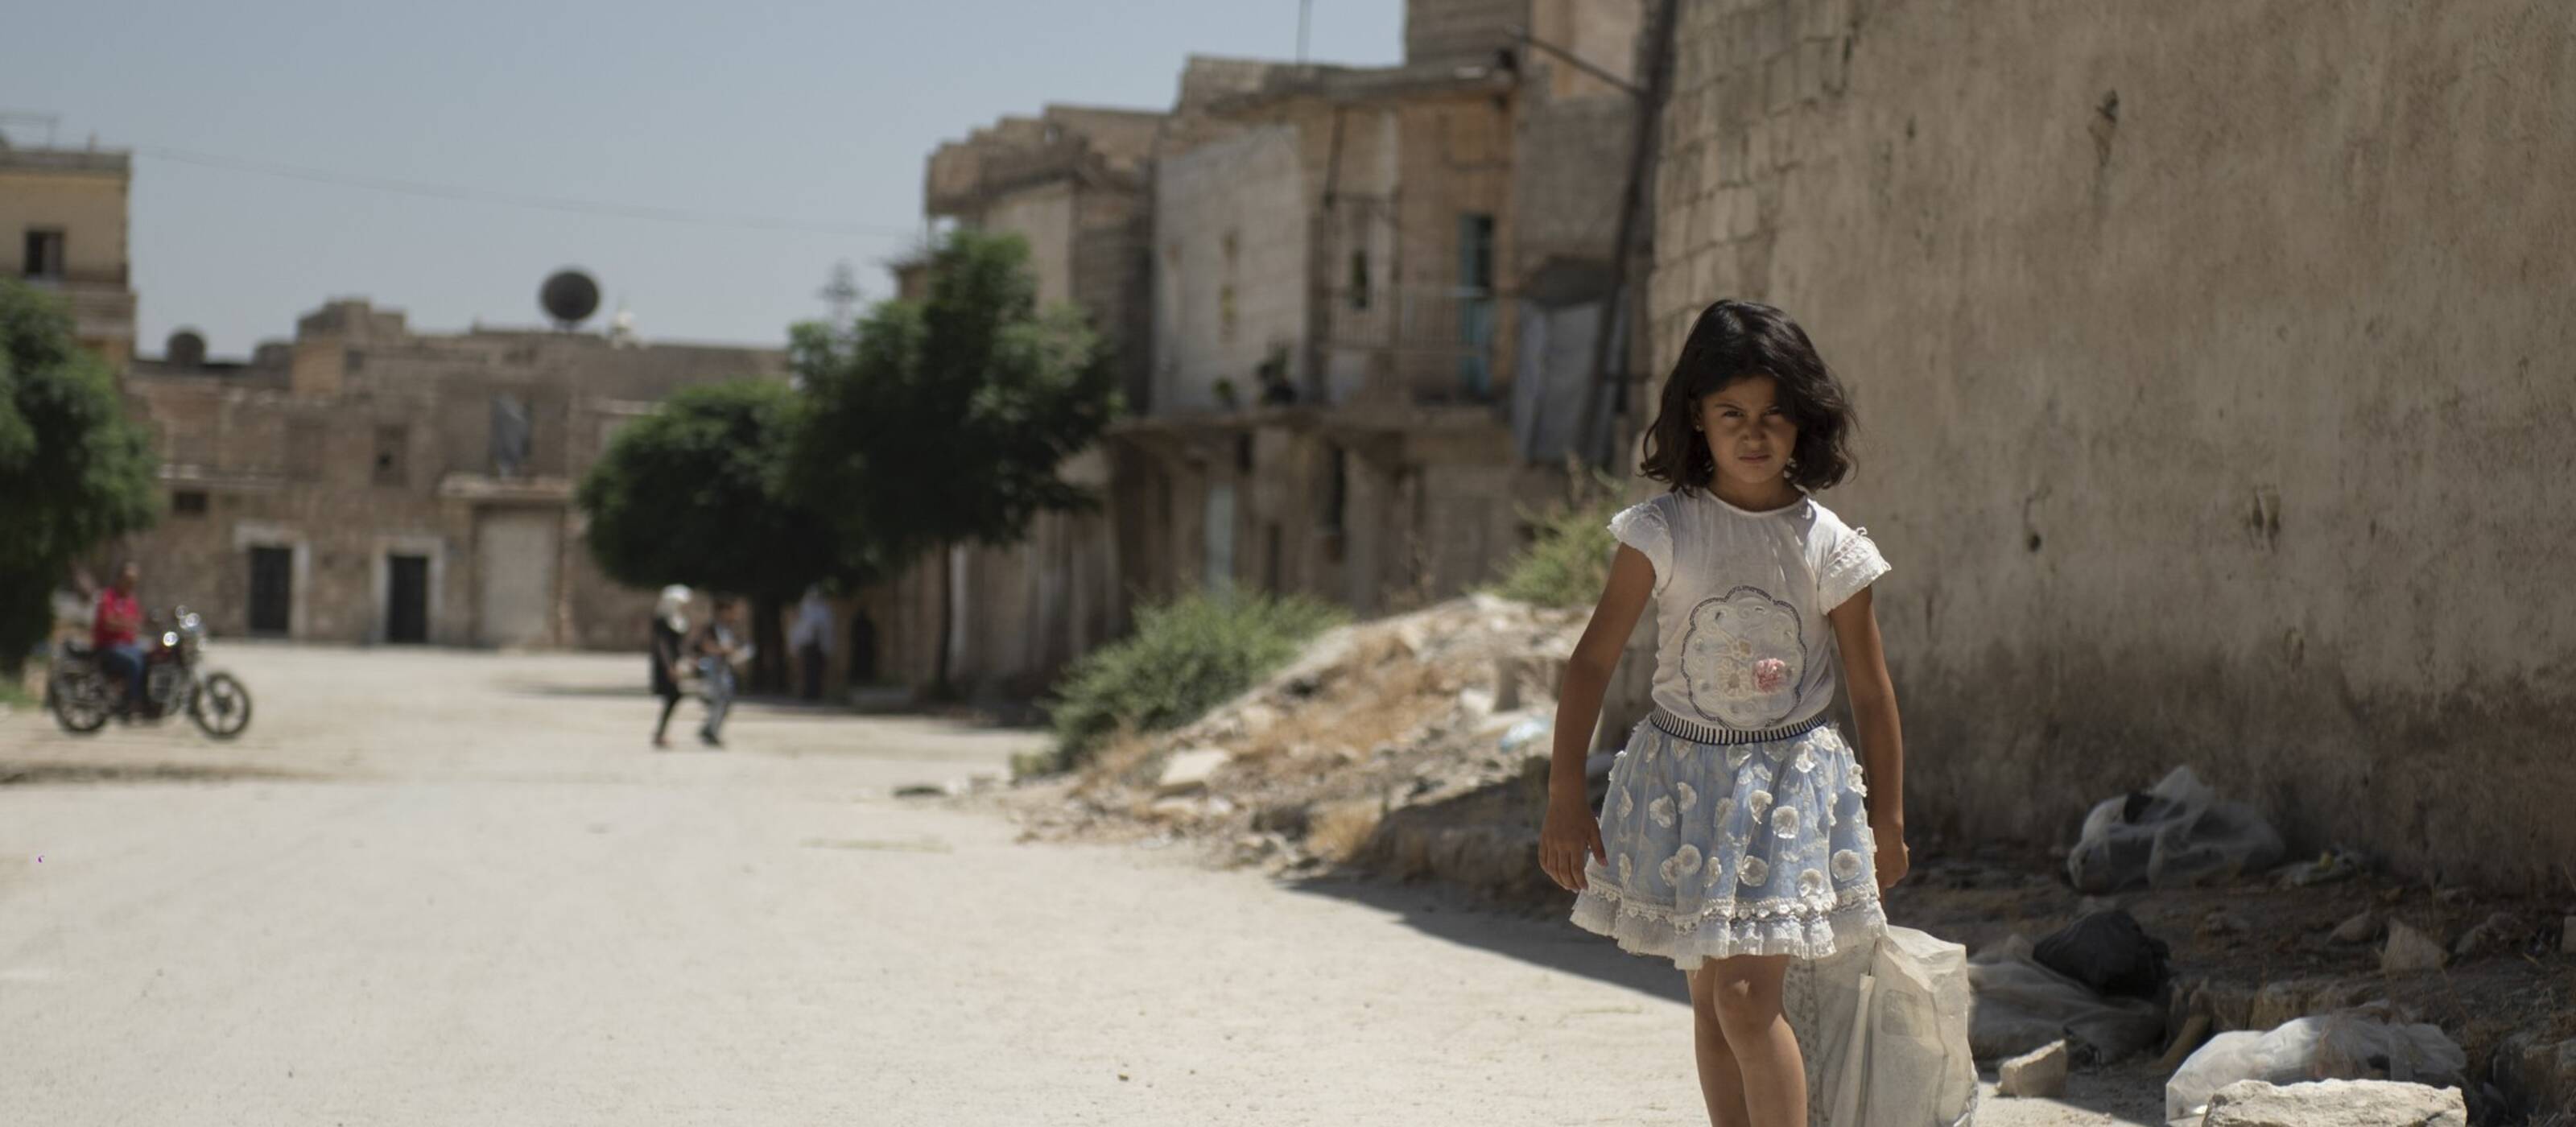 Une jeune fille se promène dans le quartier de Jabal Bedro, dans la ville d'Alep dévastée par le tremblement de terre et la guerre.